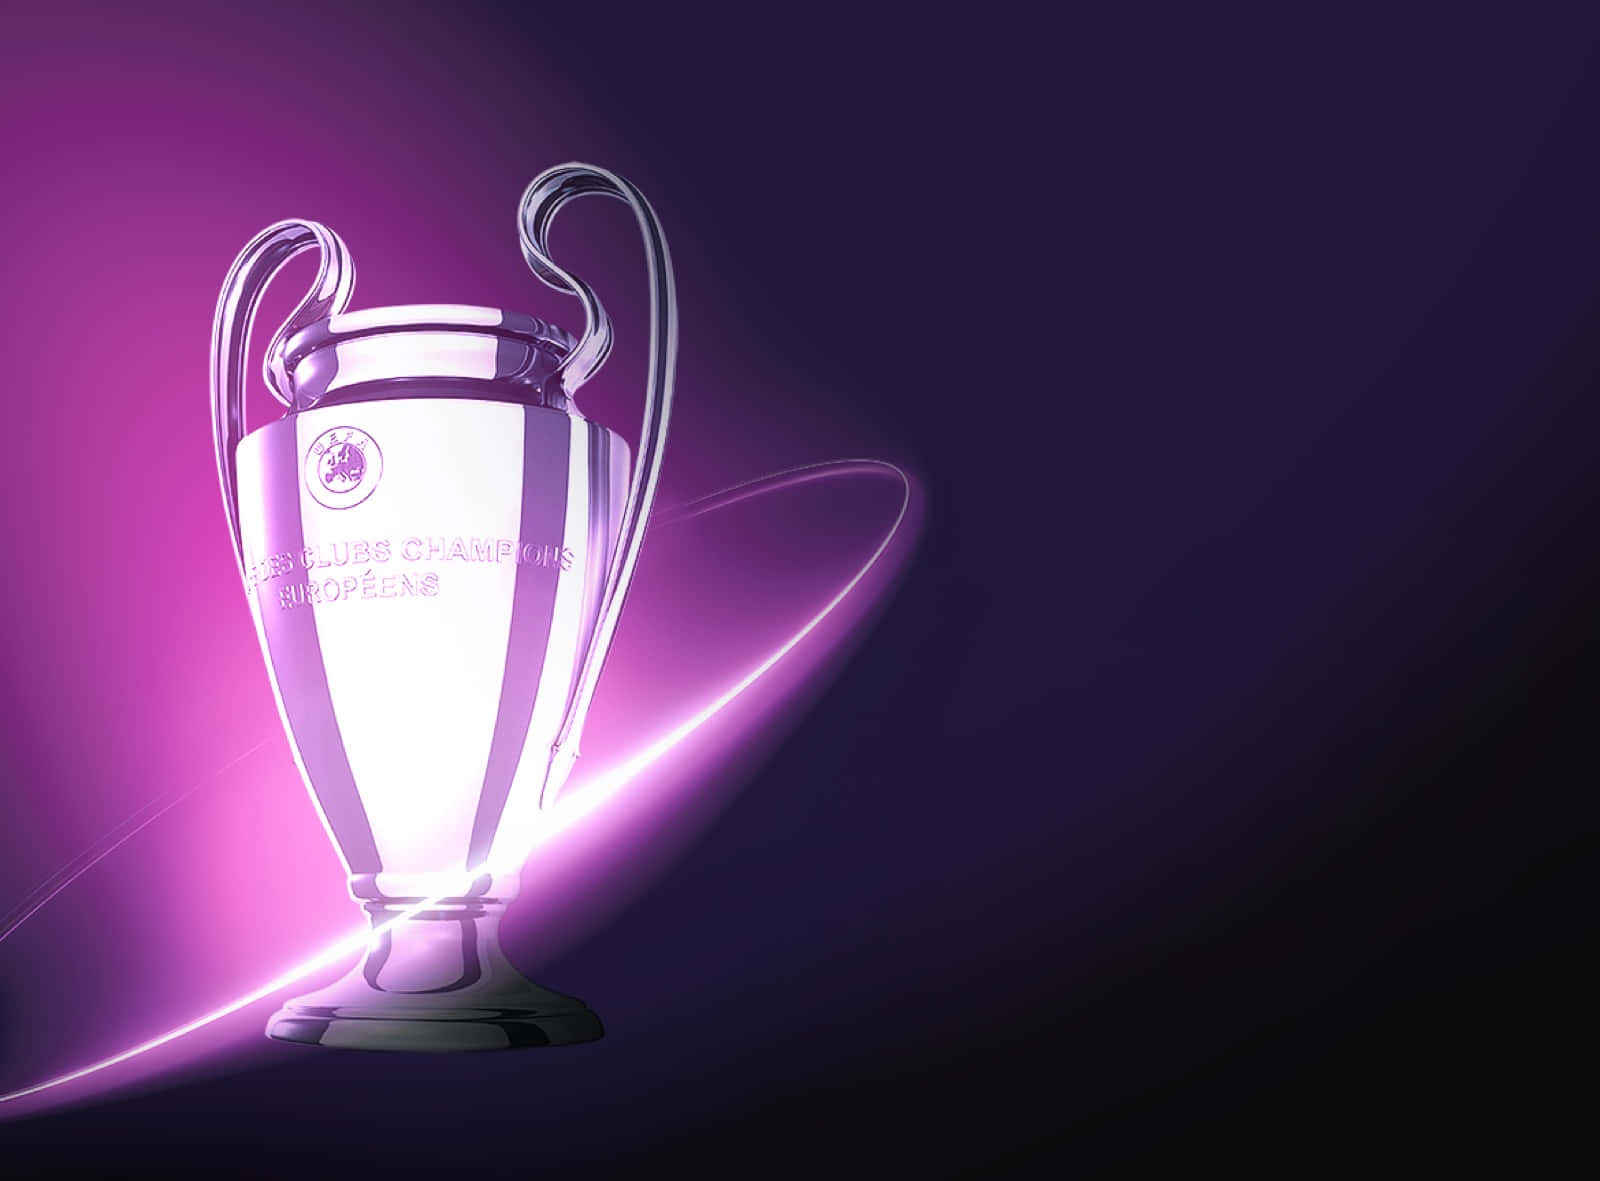 Fejringenaf Champions League-sejre